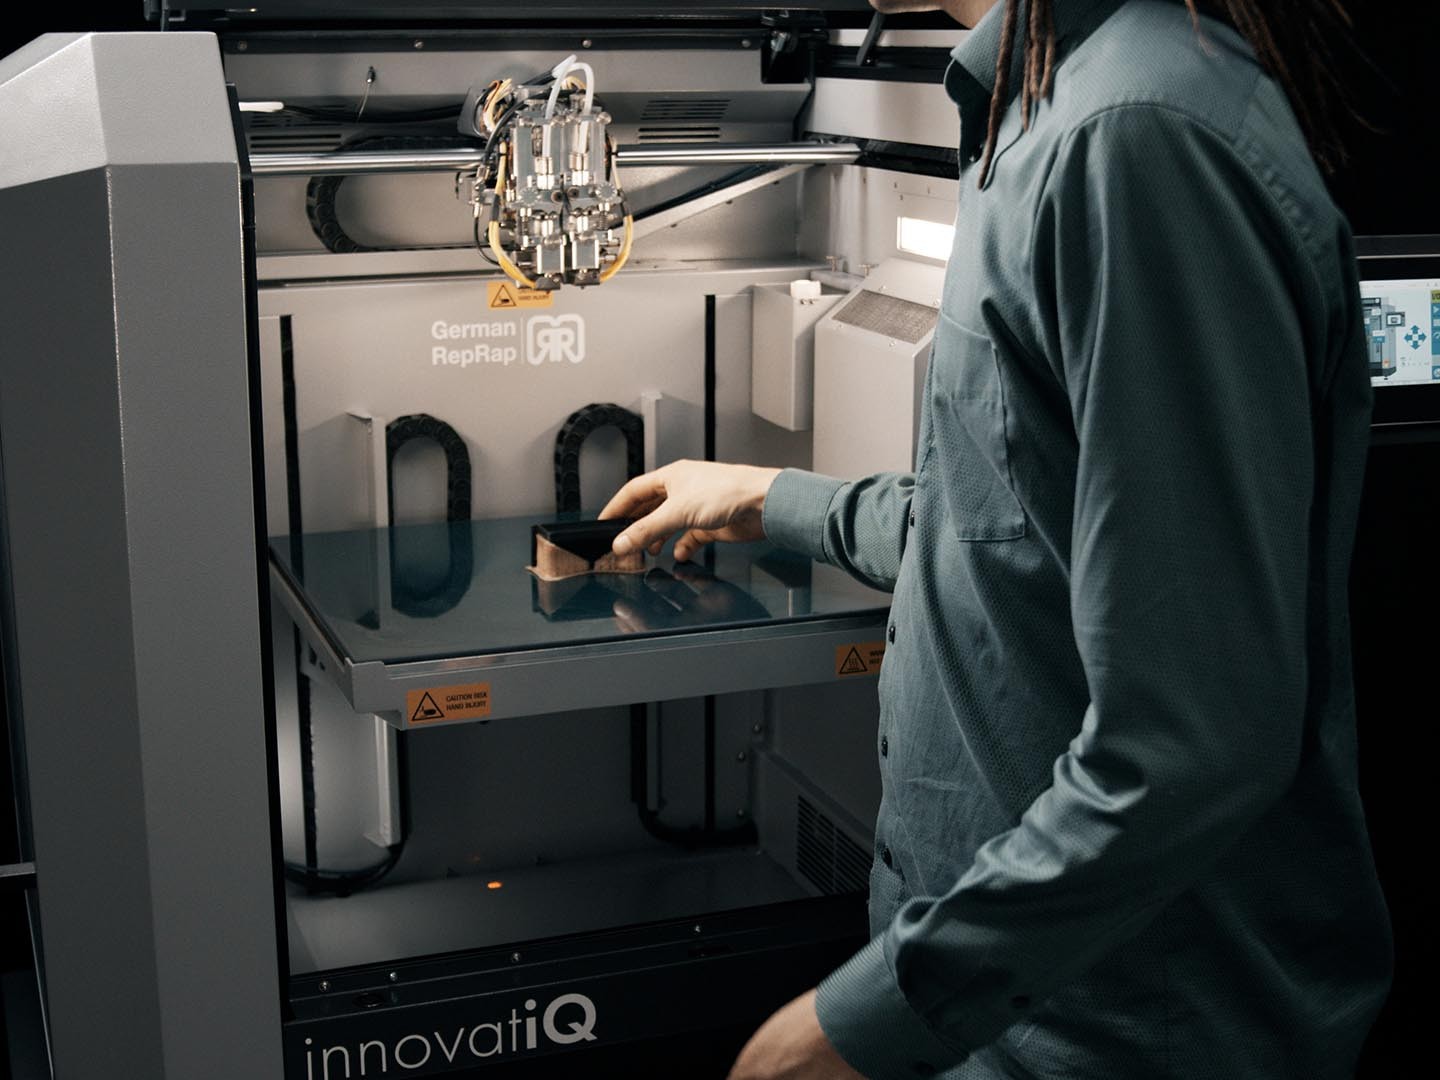 TiQ 5 Entnahme - 3D Drucker von innovatiQ = Germanreprap